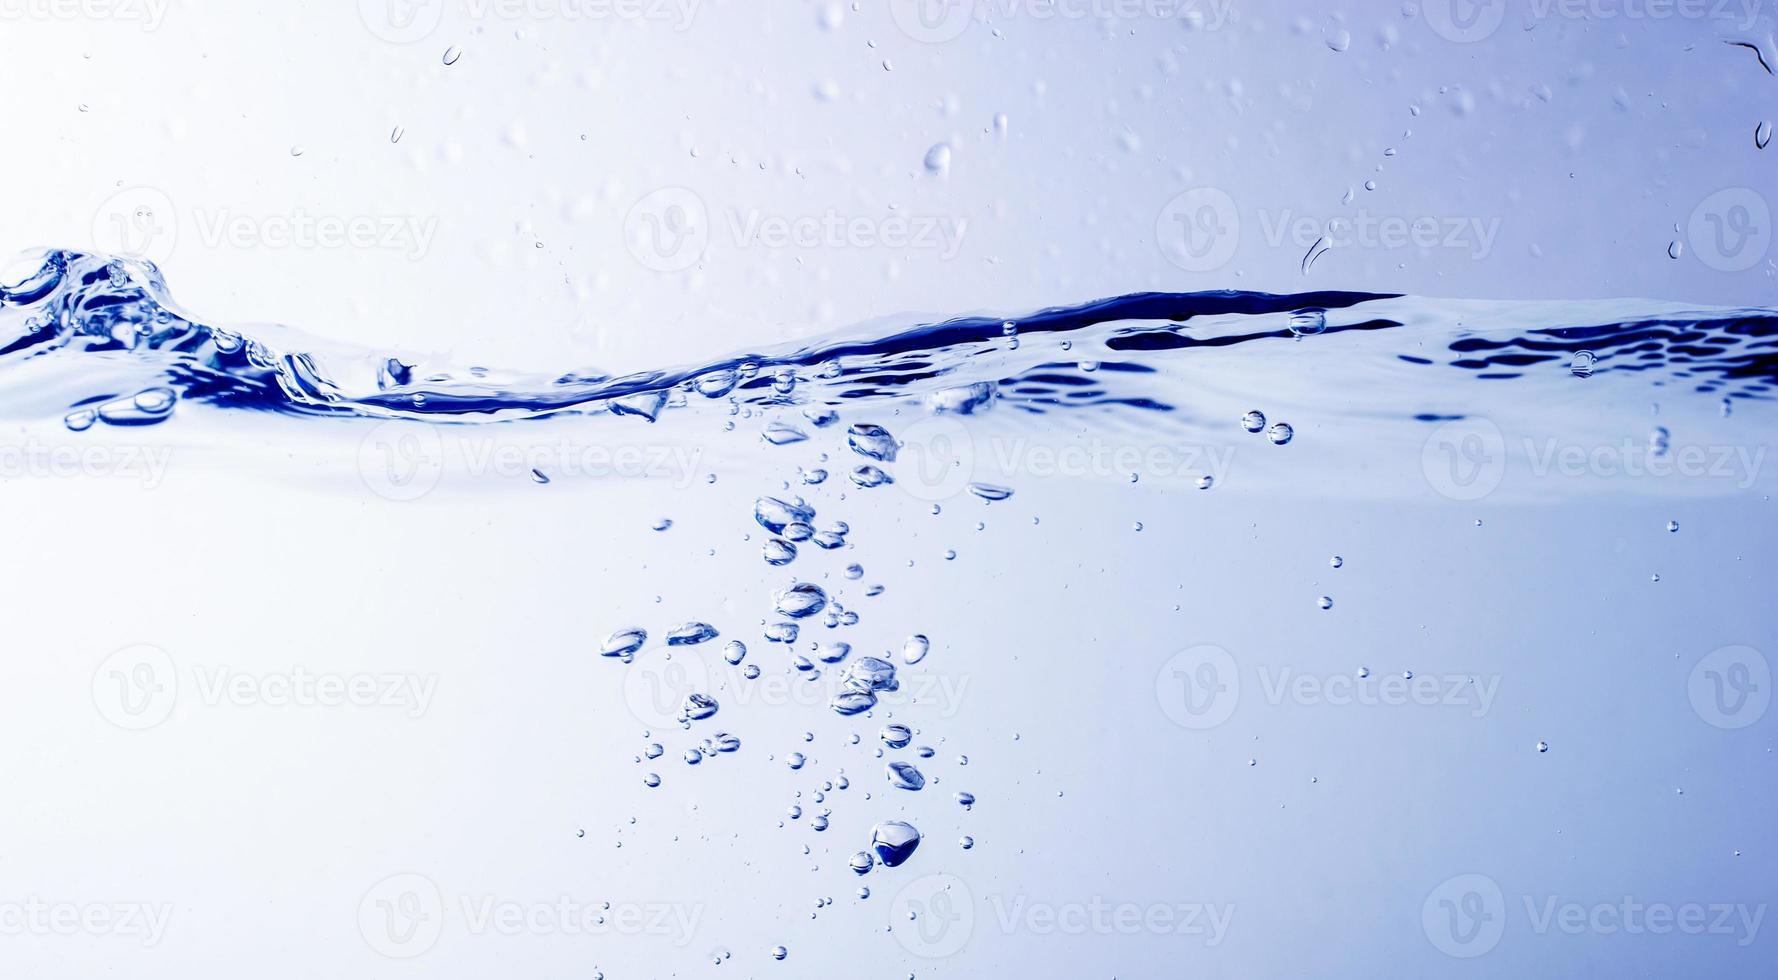 Wasser und Blasen auf blauem Hintergrund foto